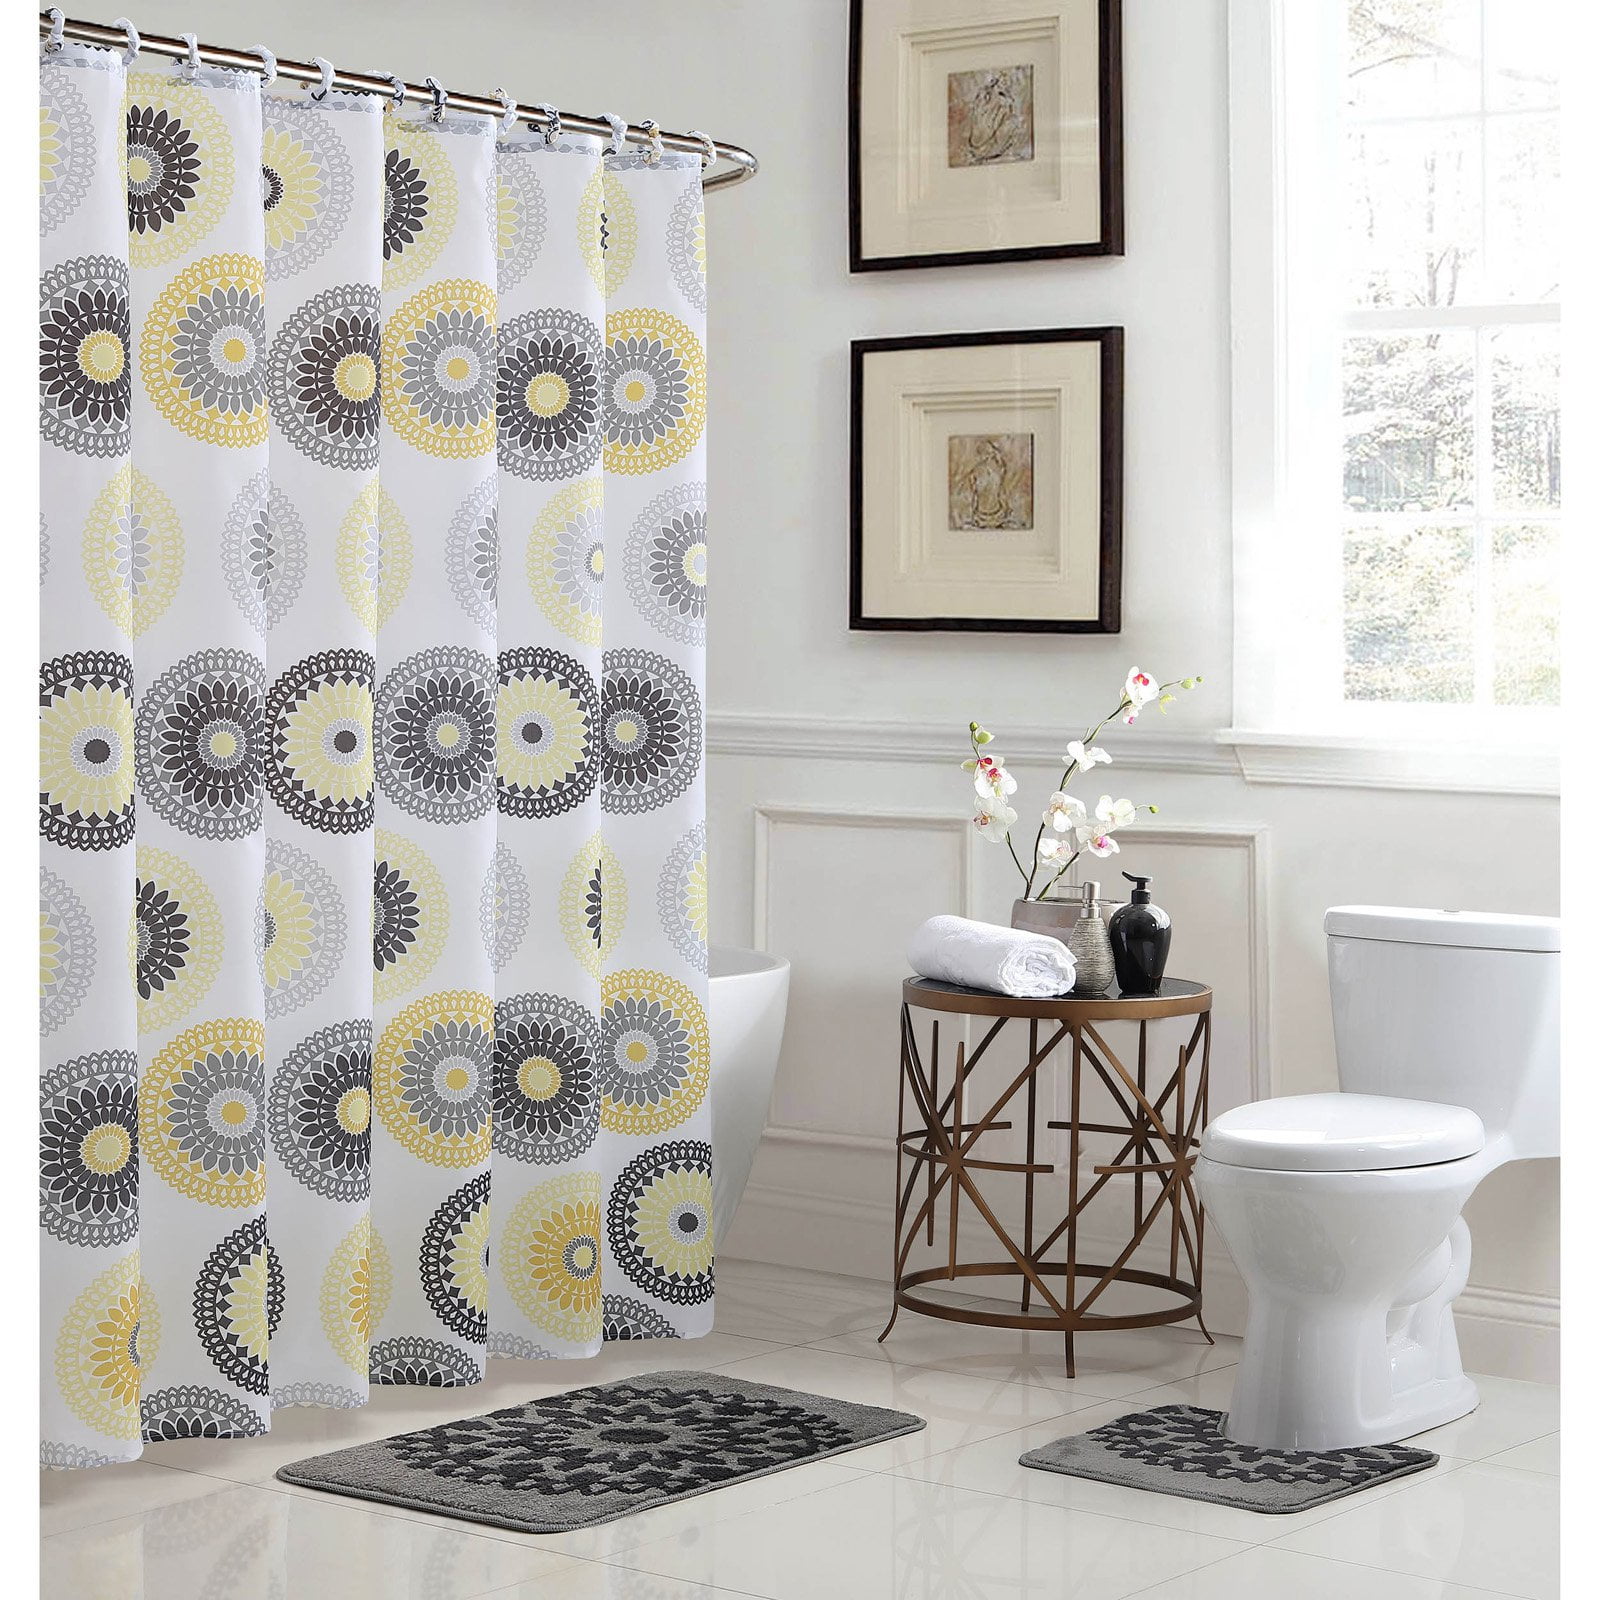 Details about   Hangse Petals and Zen Stones Shower Curtain Toilet Cover Rug Mat Contour Rug Set 